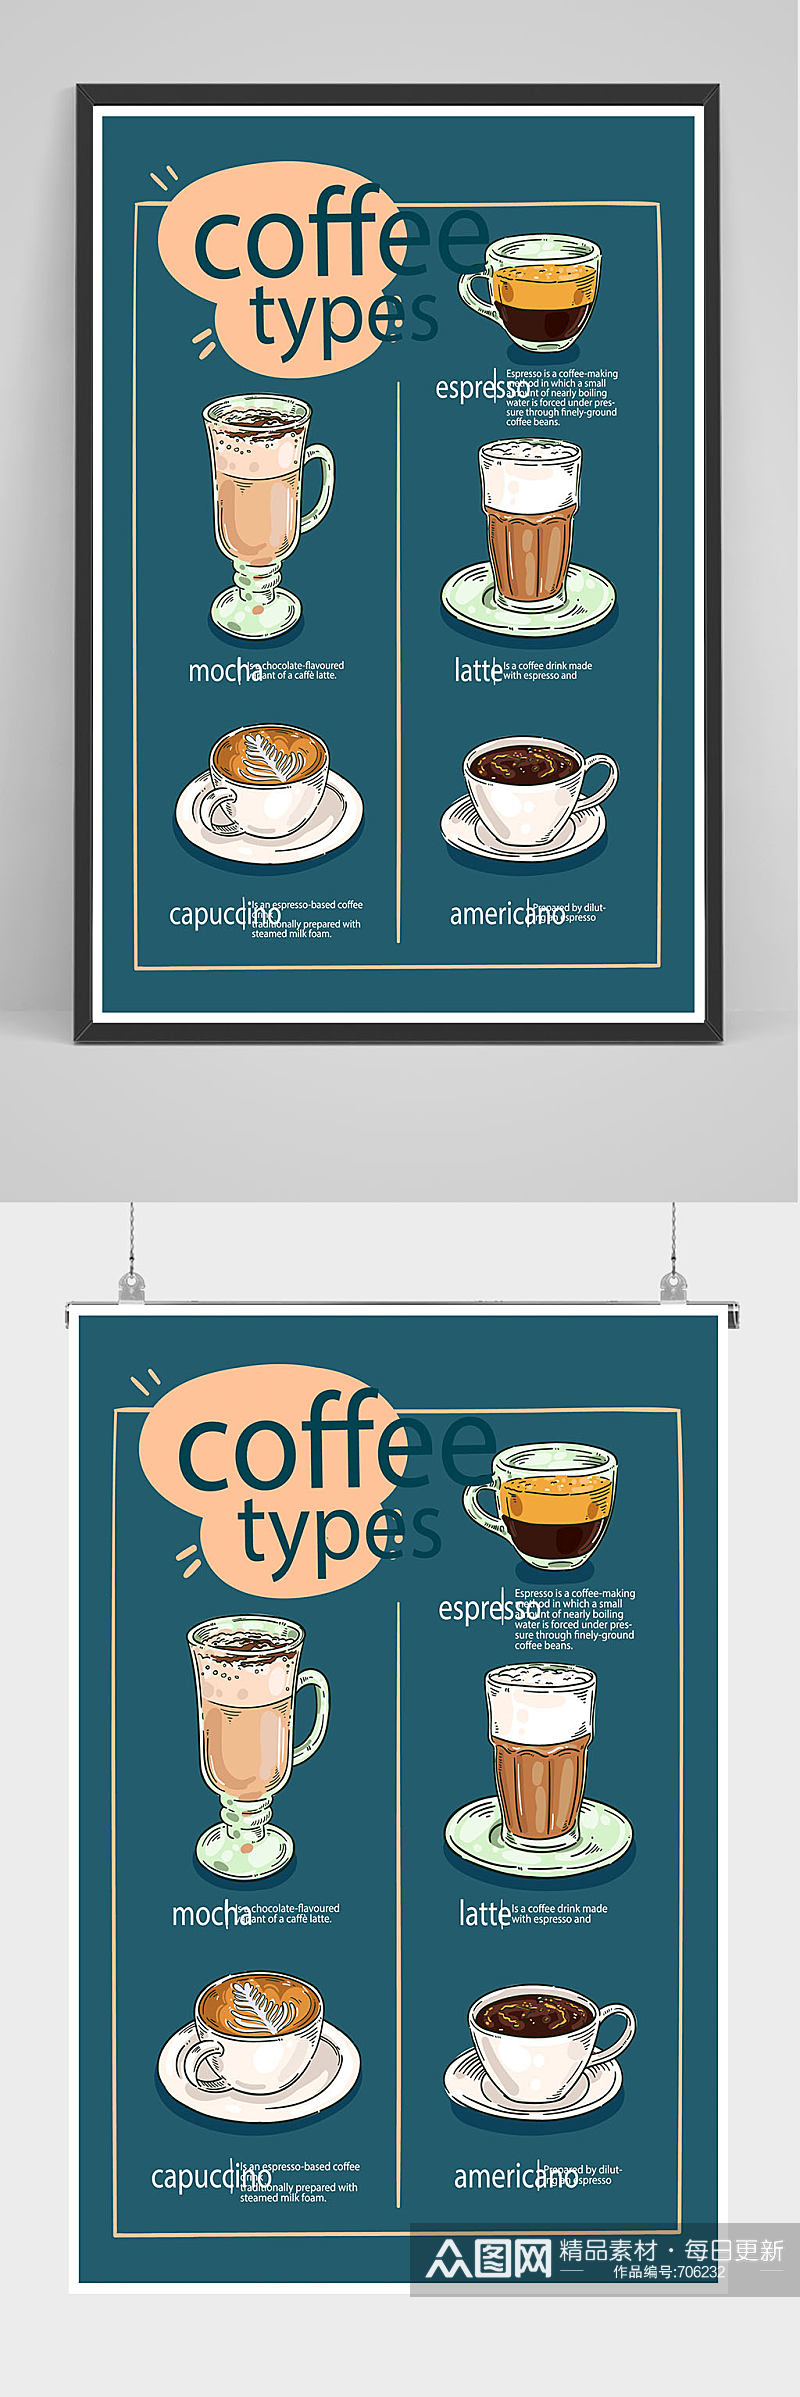 精品咖啡店饮品价目表海报设计素材